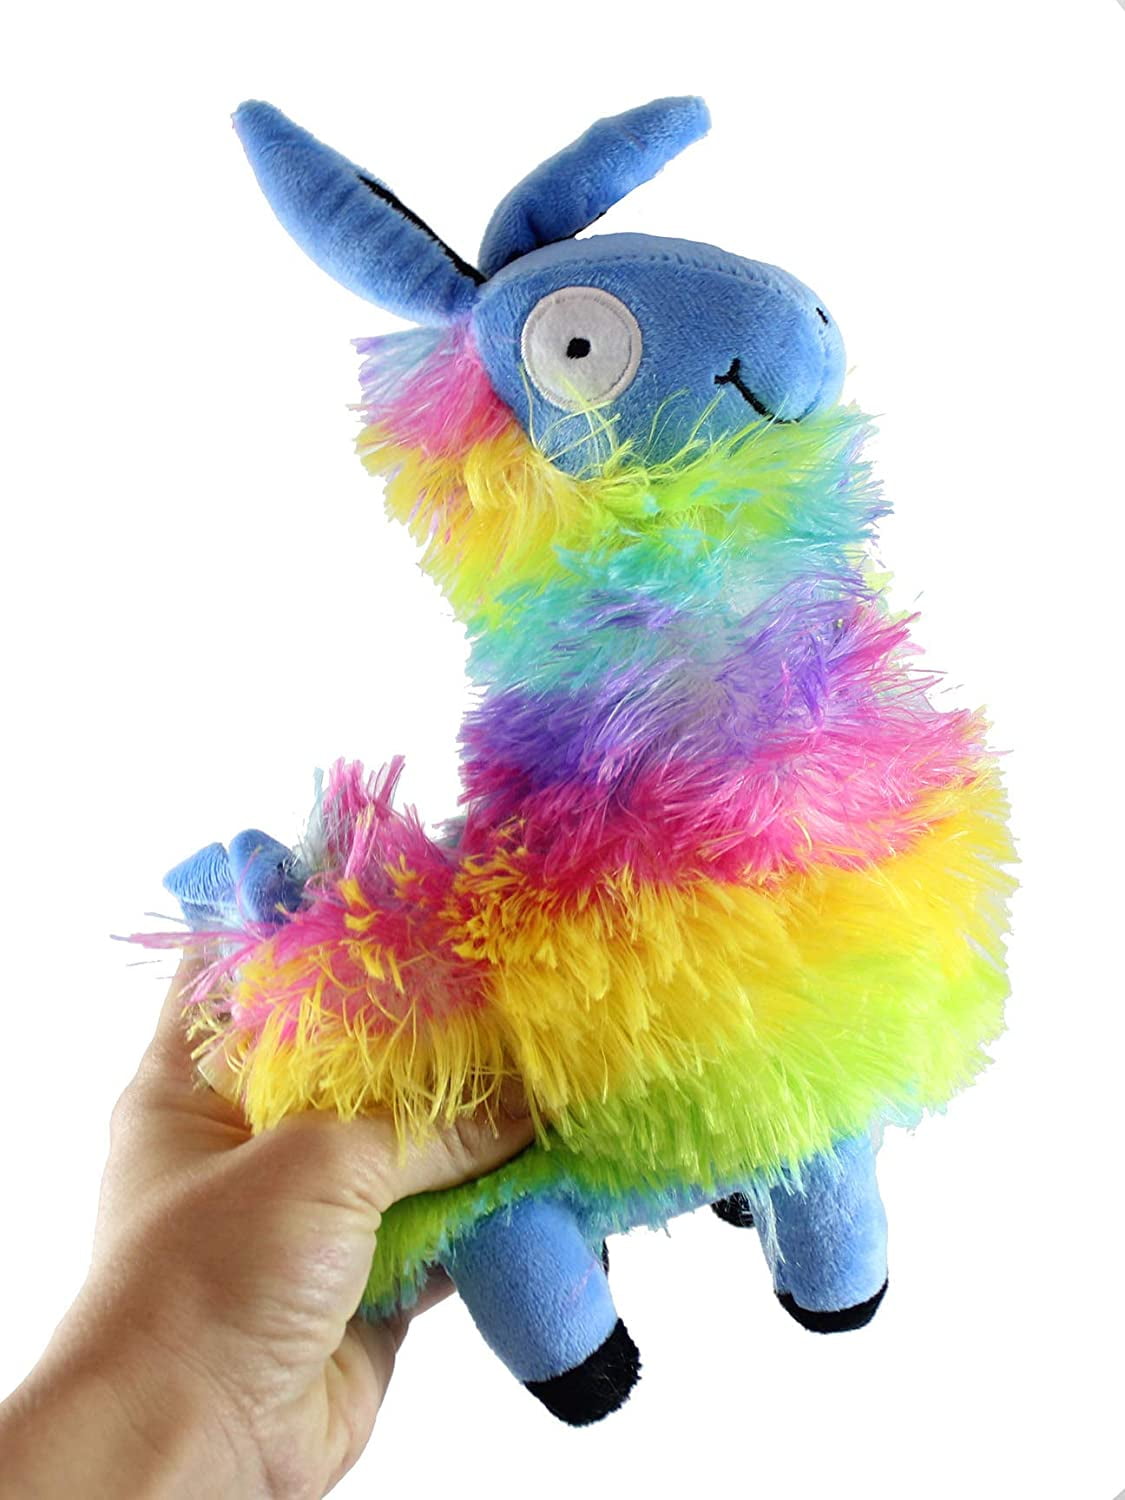 6" TY Beanie Boo Rainbow Multicolor Llama Lola Glitter Eyes 2019 New Plush Toy 